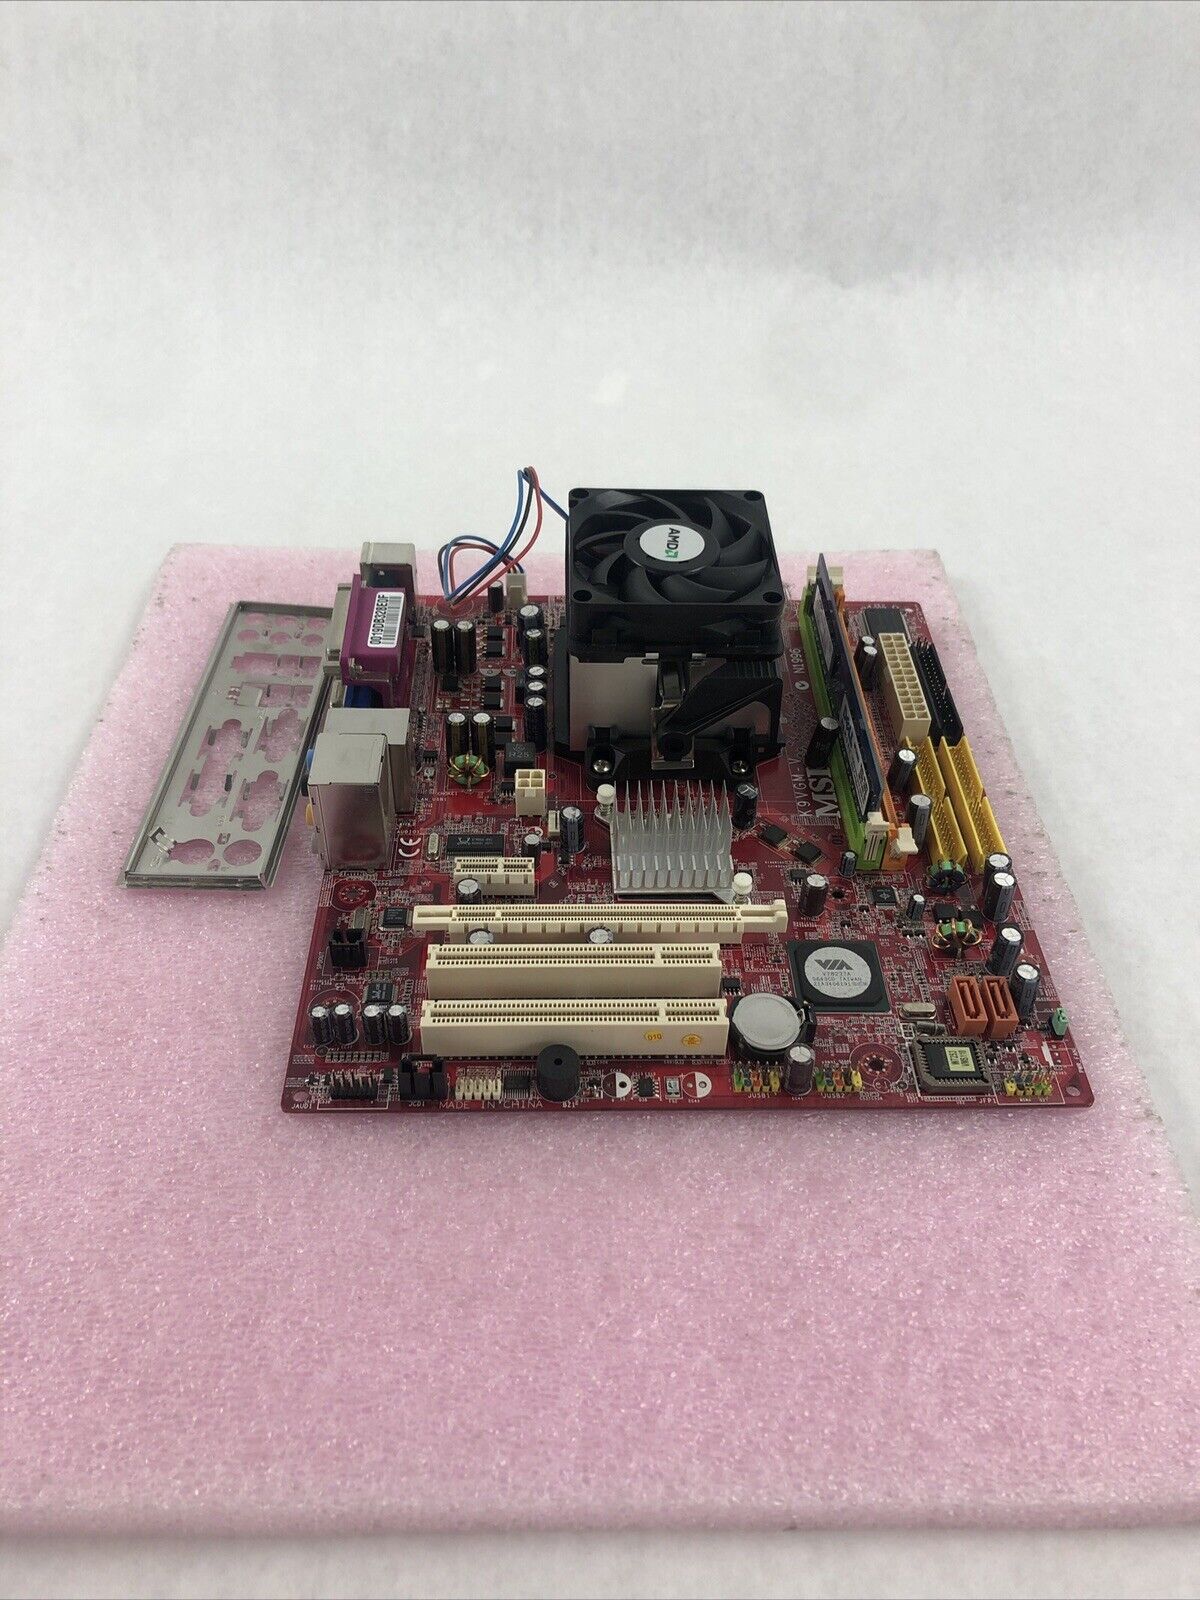 MSI MS-7253 VER 1.0 MB AMD Athlon 64 x2 2.4GHz 1.5GB RAM w/ I/O Shield